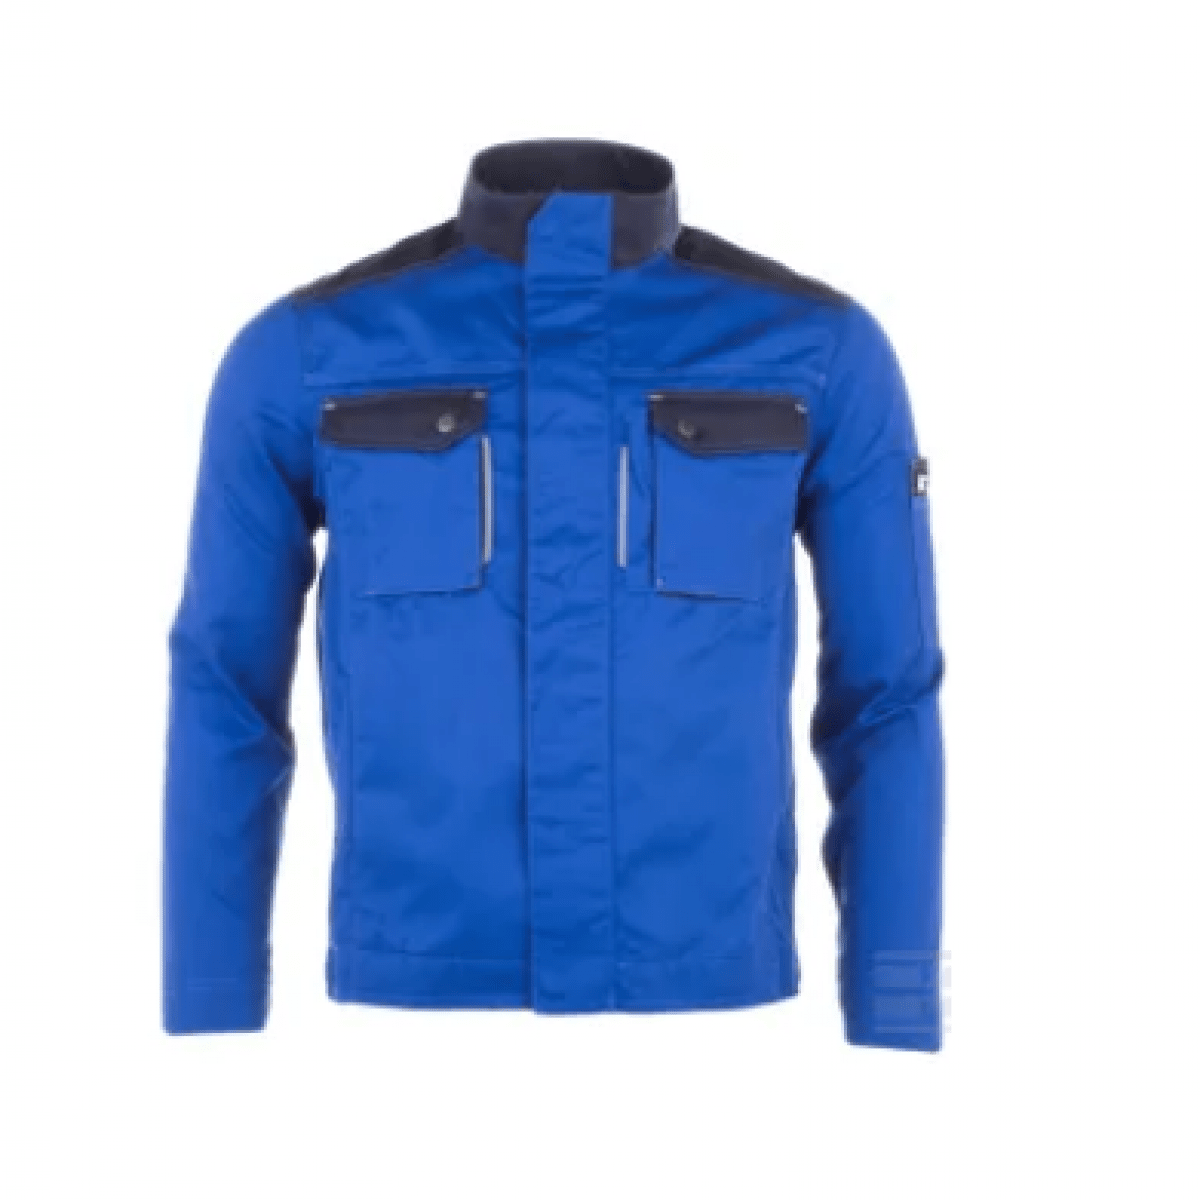 GK/KW101030083060 Pracovná bunda, modrá, veľkosť 2XL, Kramp